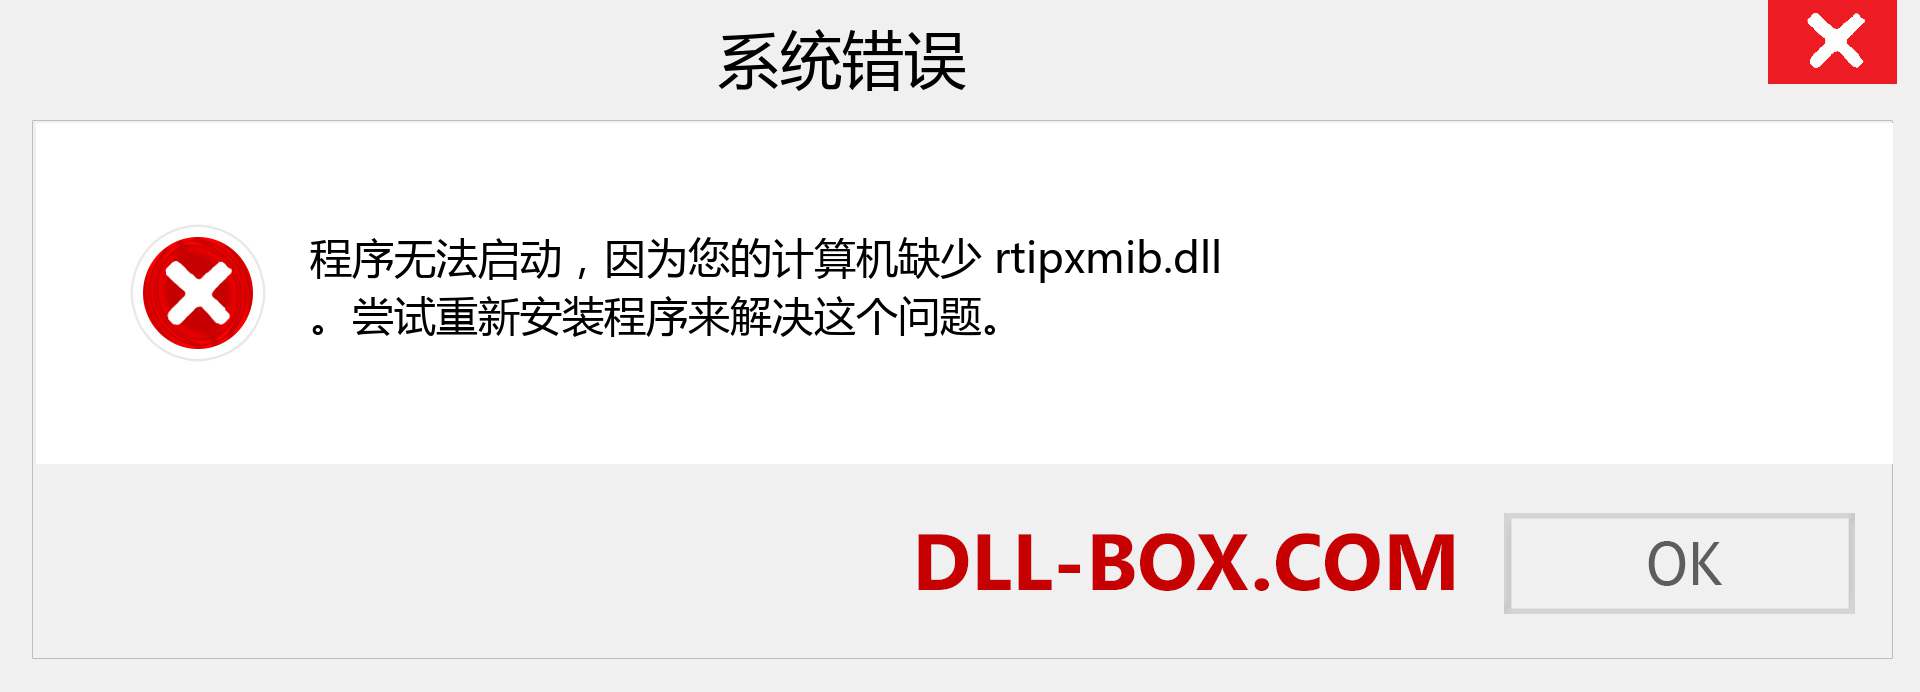 rtipxmib.dll 文件丢失？。 适用于 Windows 7、8、10 的下载 - 修复 Windows、照片、图像上的 rtipxmib dll 丢失错误